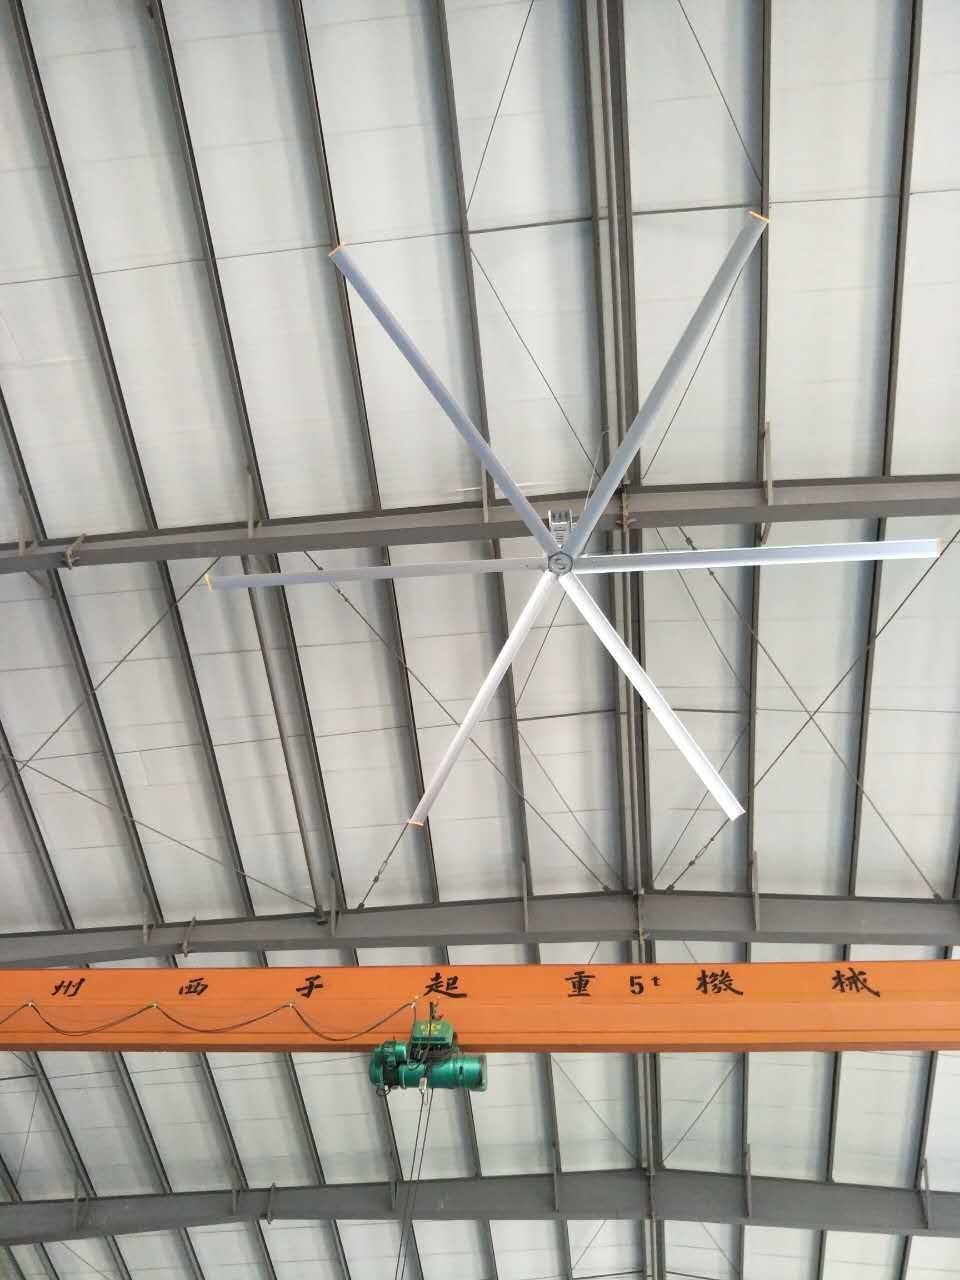 fan de plafond surdimensionnée d'extra large des fans de plafond de 8.6m/28ft pour la grande pièce